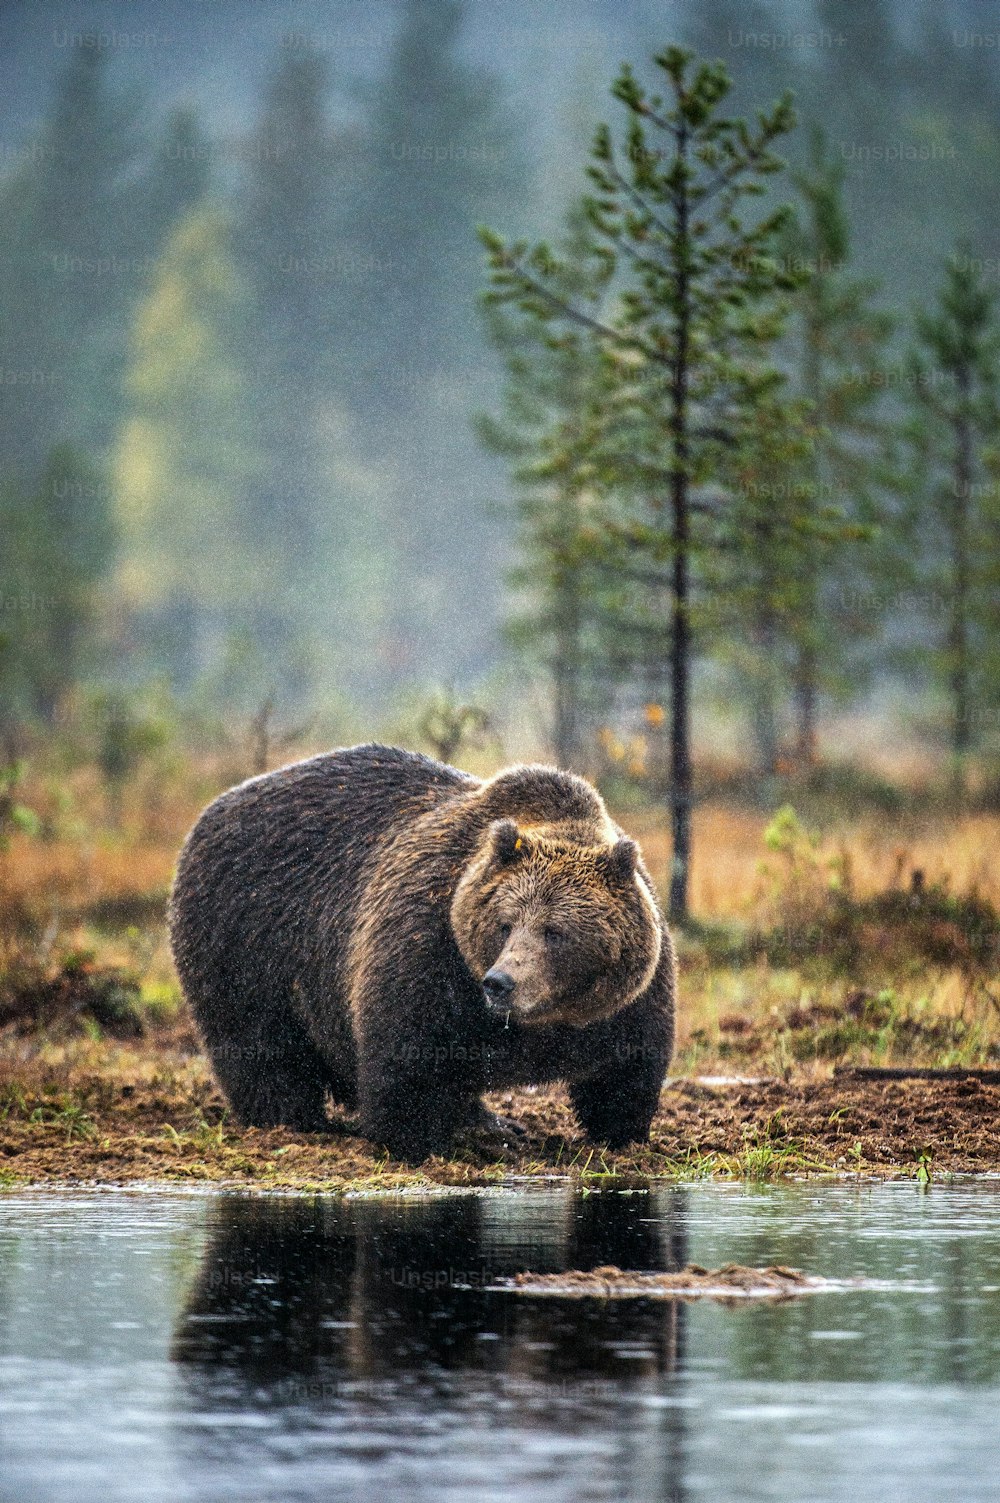 Un orso bruno nella palude nella foresta autunnale. Maschio adulto di orso bruno grande. Nome scientifico: Ursus arctos. Habitat naturale, stagione autunnale.